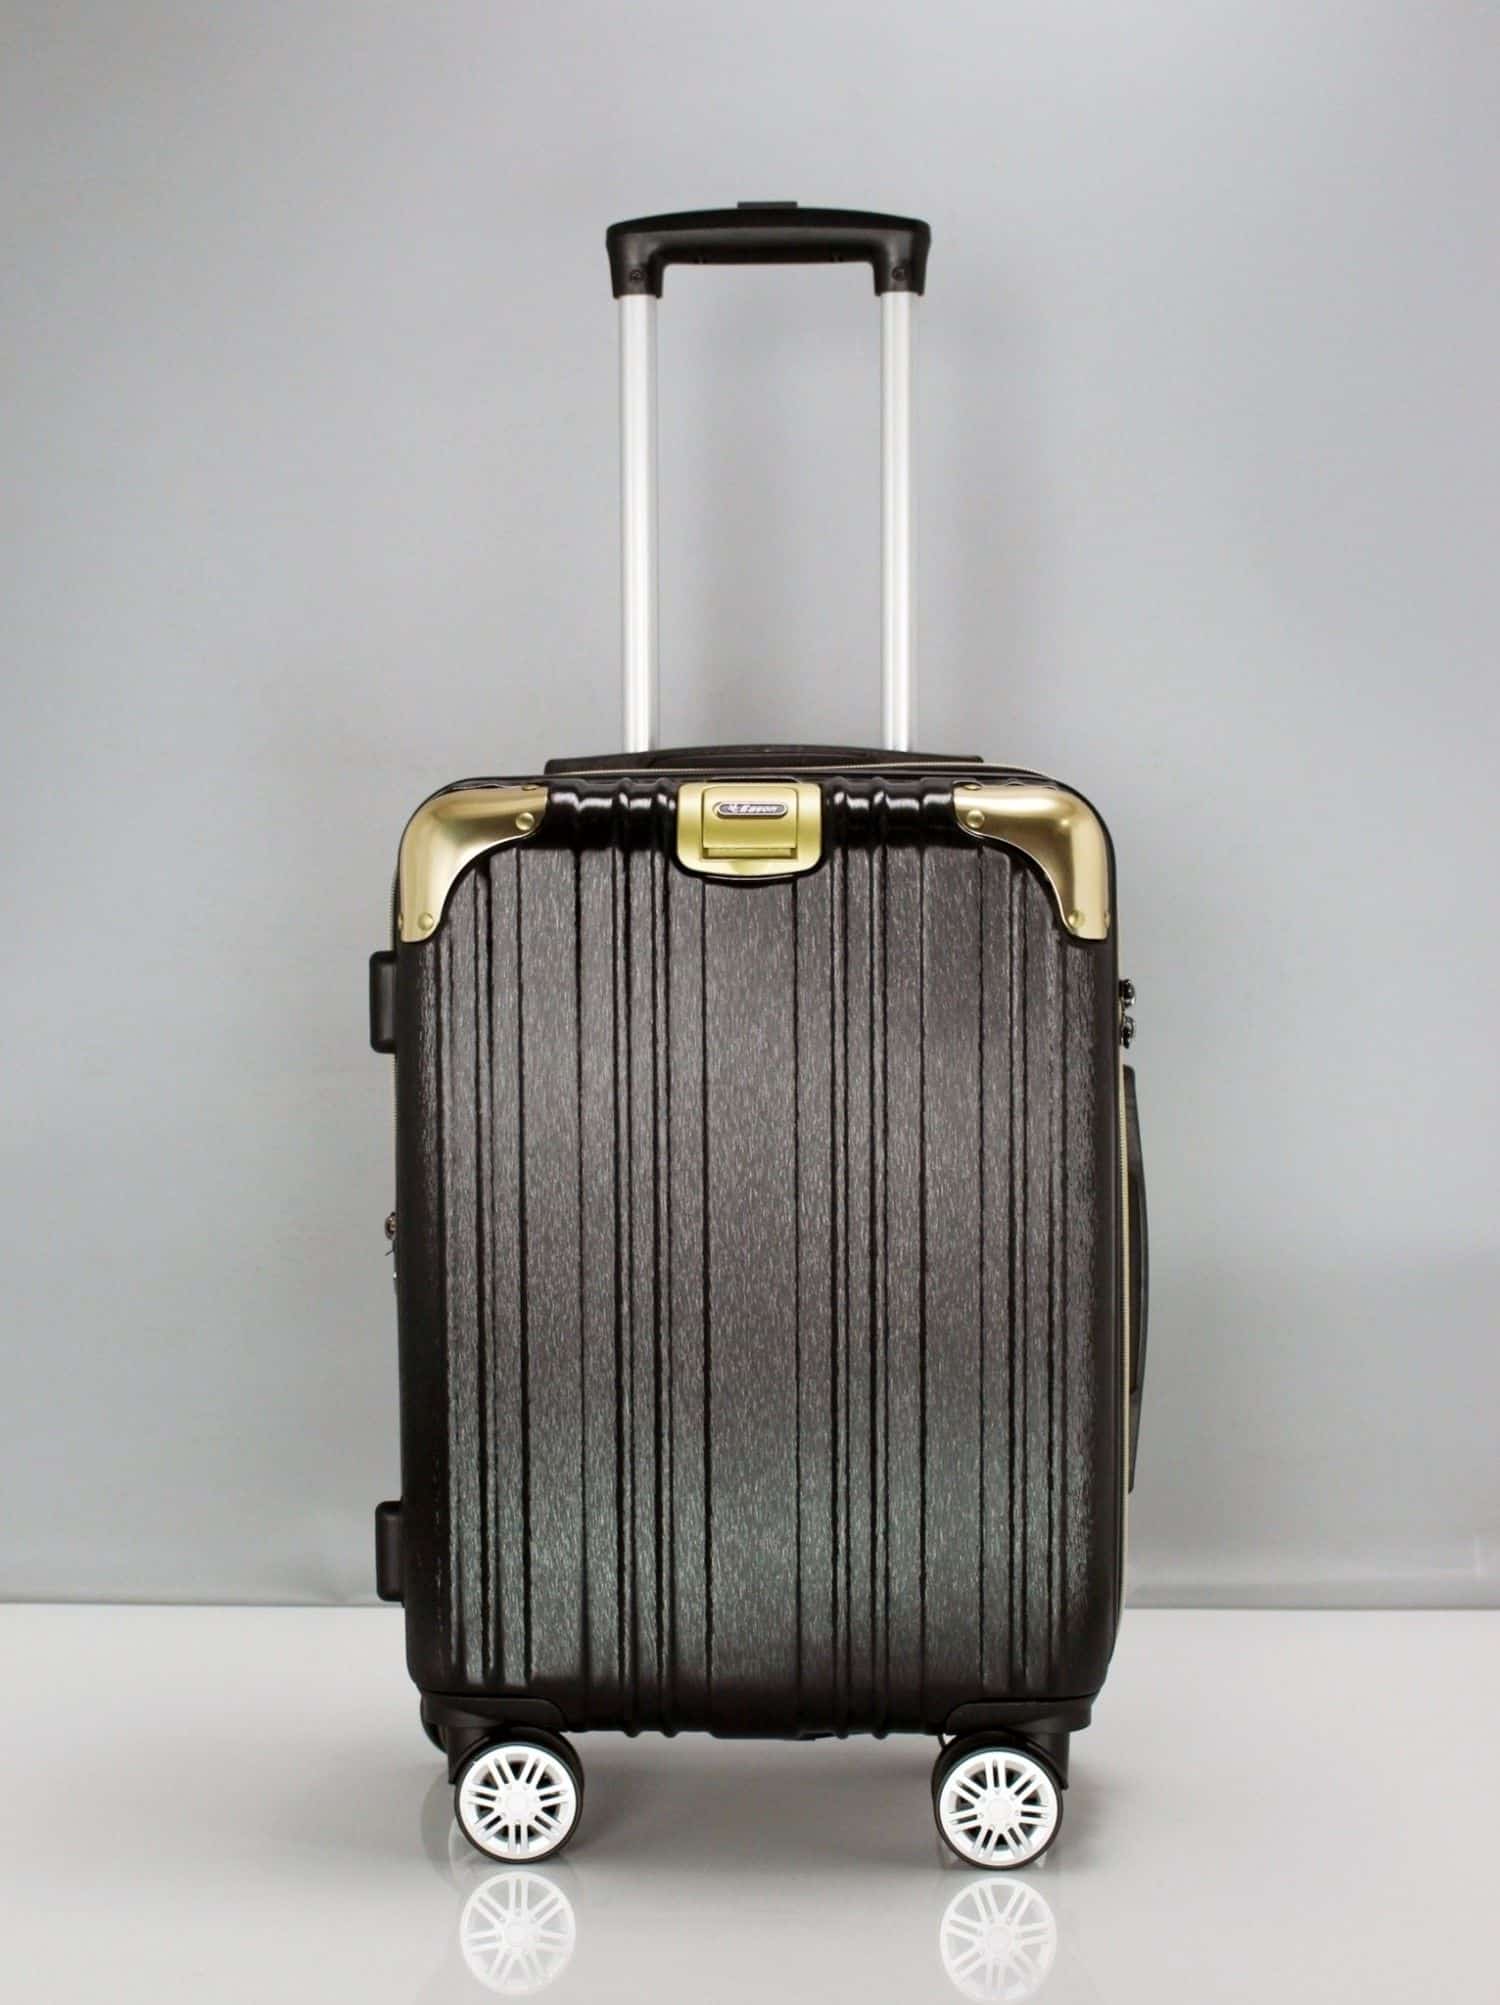 米蘭PC拉鍊箱 Milan PC zipper luggage - 19 \